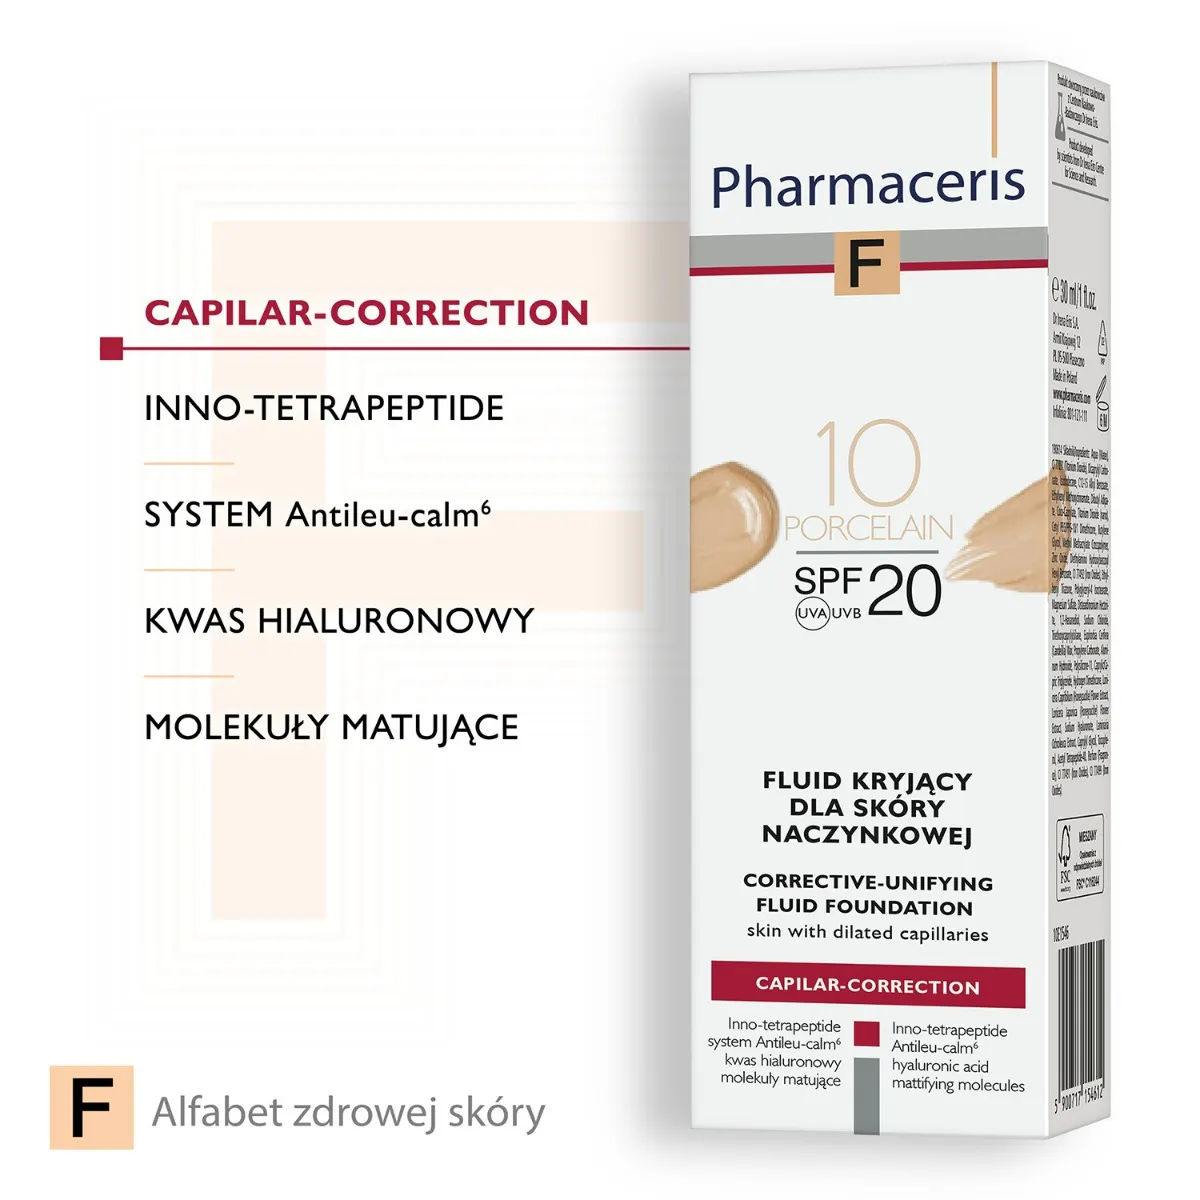 Pharmaceris F Capilar-Correction, fluid kryjący do skóry naczynkowej 10 Porcelain SPF 20, 30 ml 